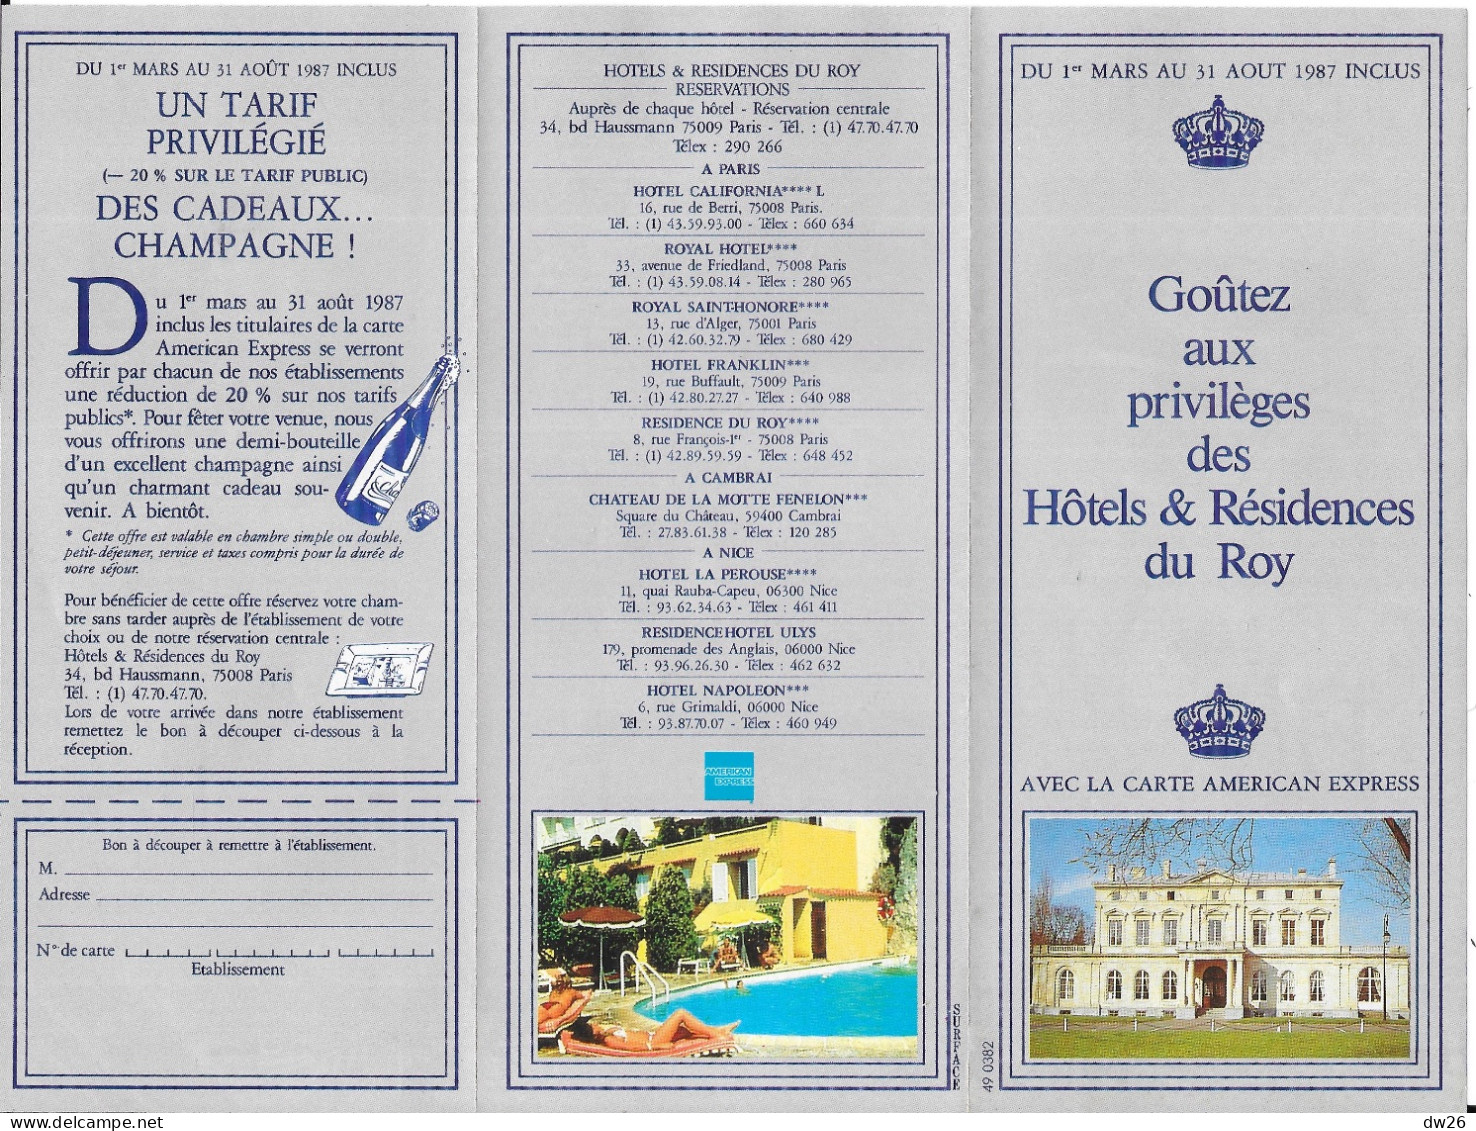 Dépliant Touristique: Goûtez Aux Privilèges Des Hotels & Résidences Du Roy 1987 (Carte American Express) - Dépliants Touristiques